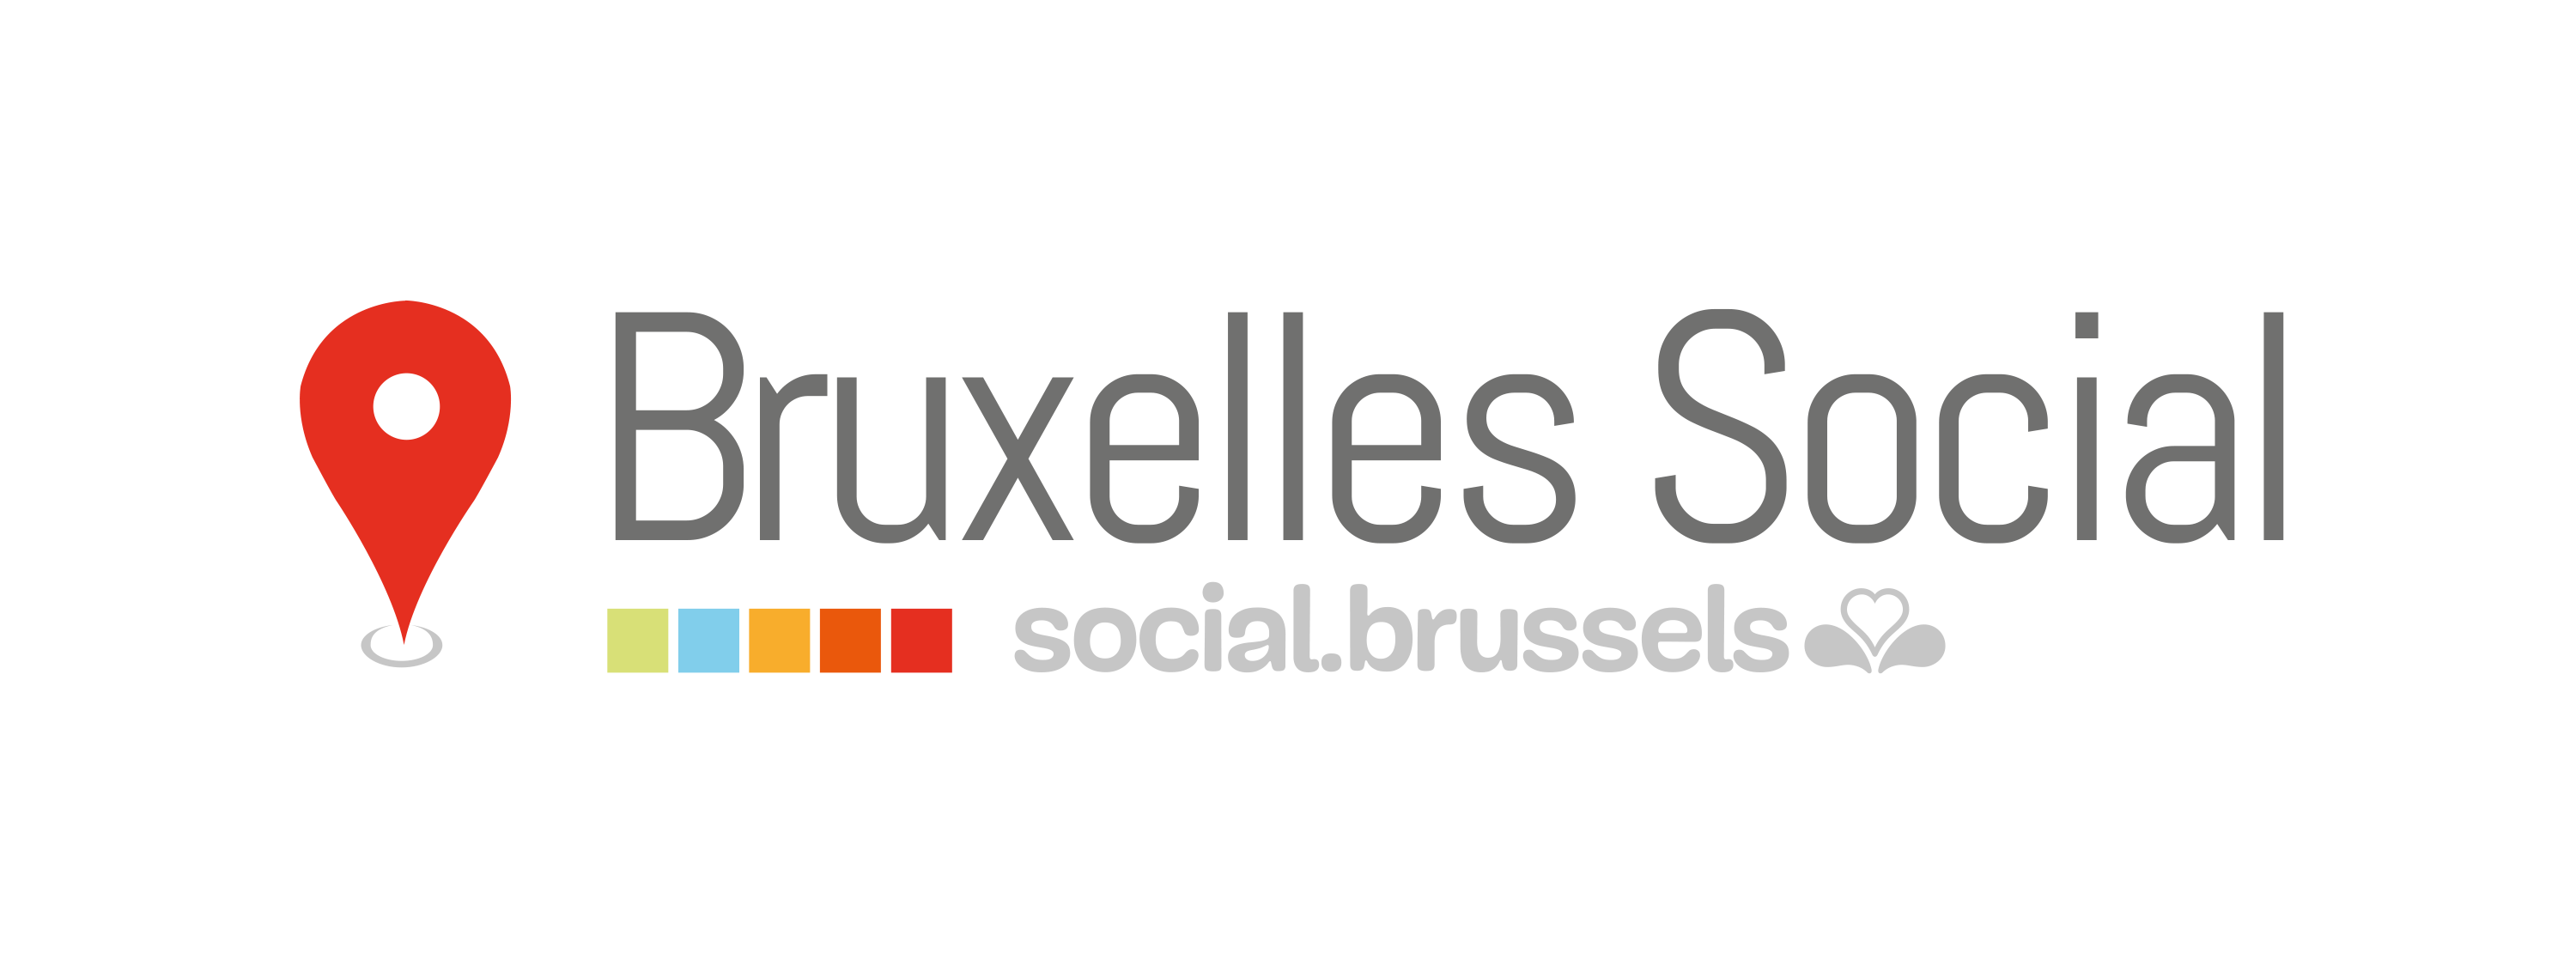 Bruxelles Social